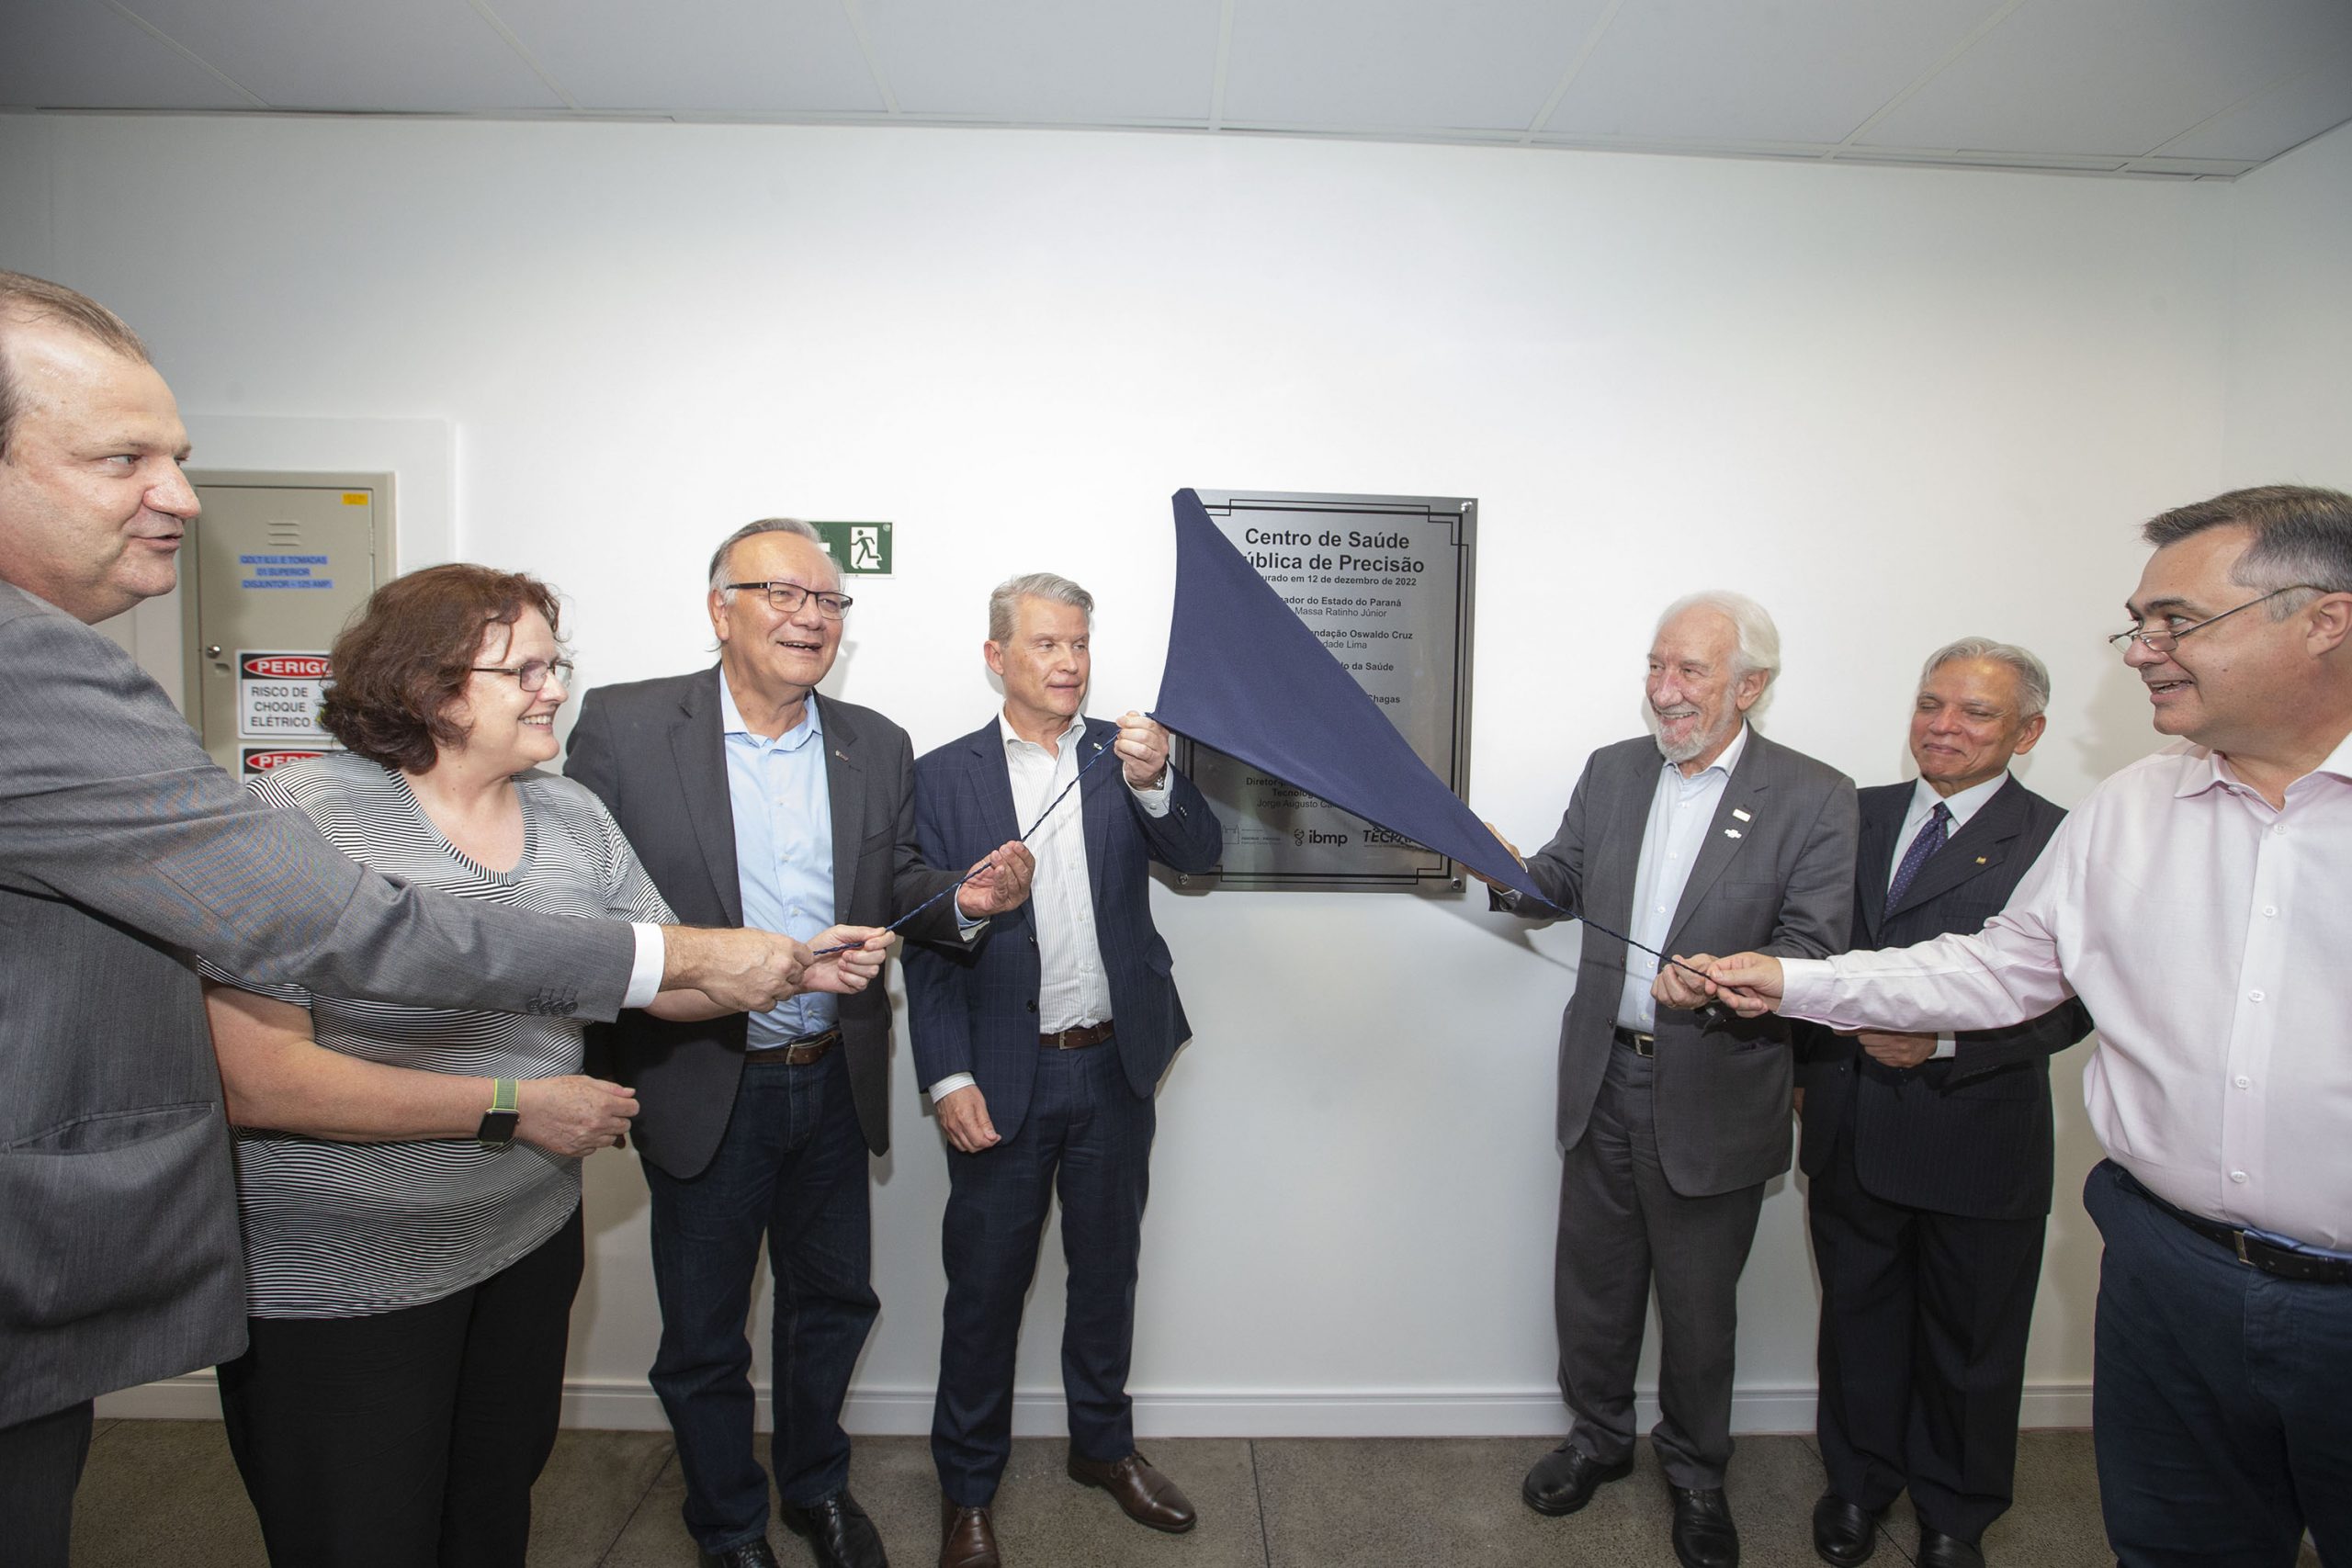 Fiocruz-PR, IBMP e Tecpar inauguram Centro de Saúde Pública de Precisão